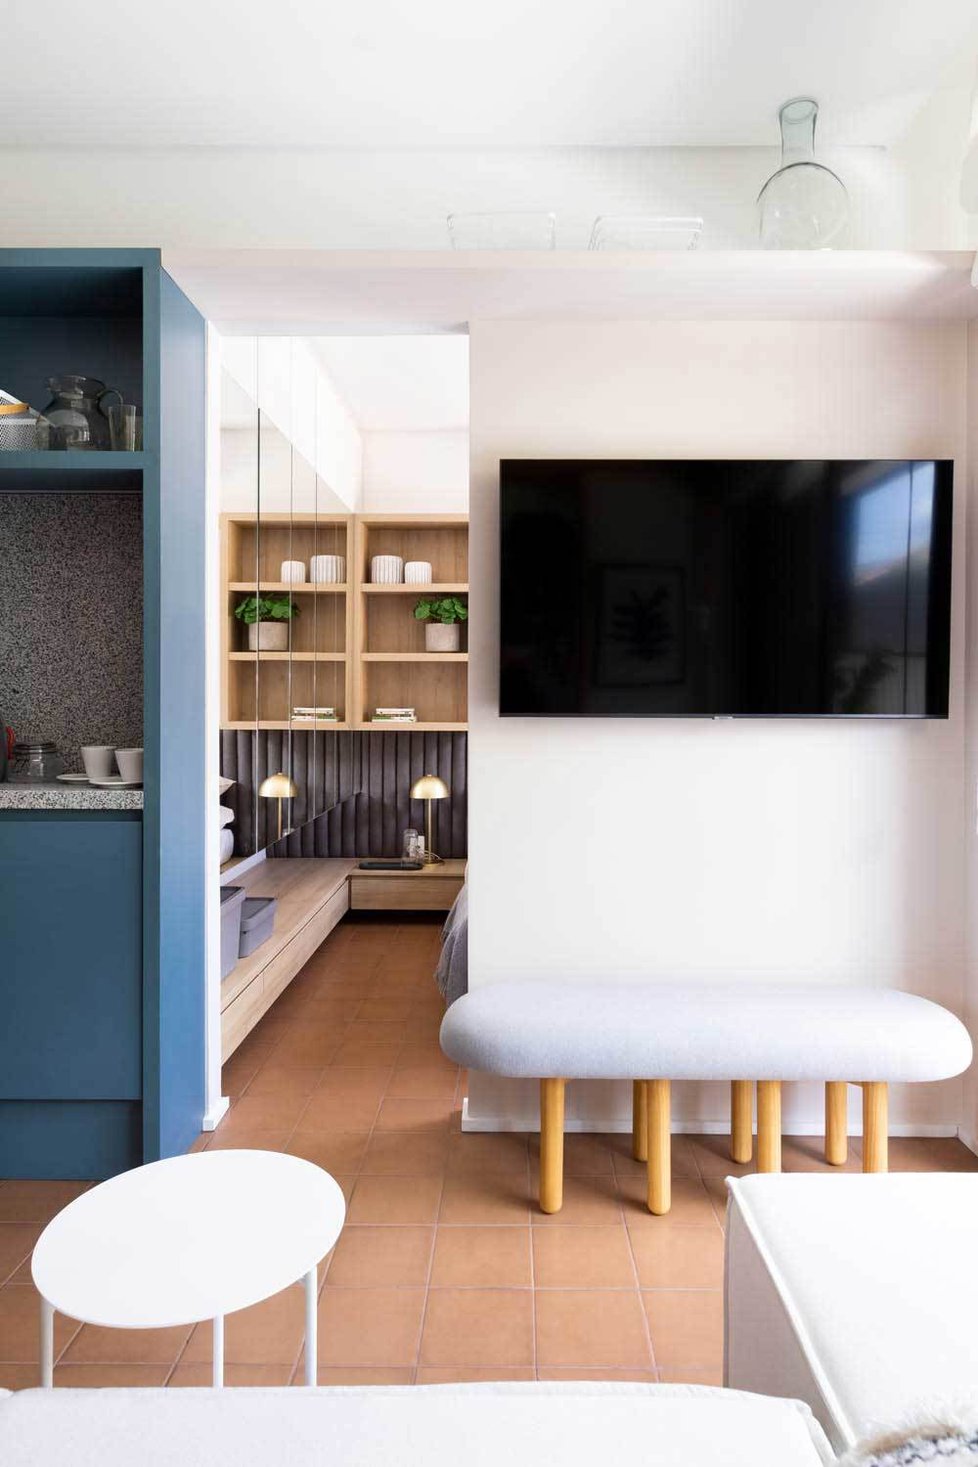 Malý byt oživily zářivé barvy a originální řešení prostoru.